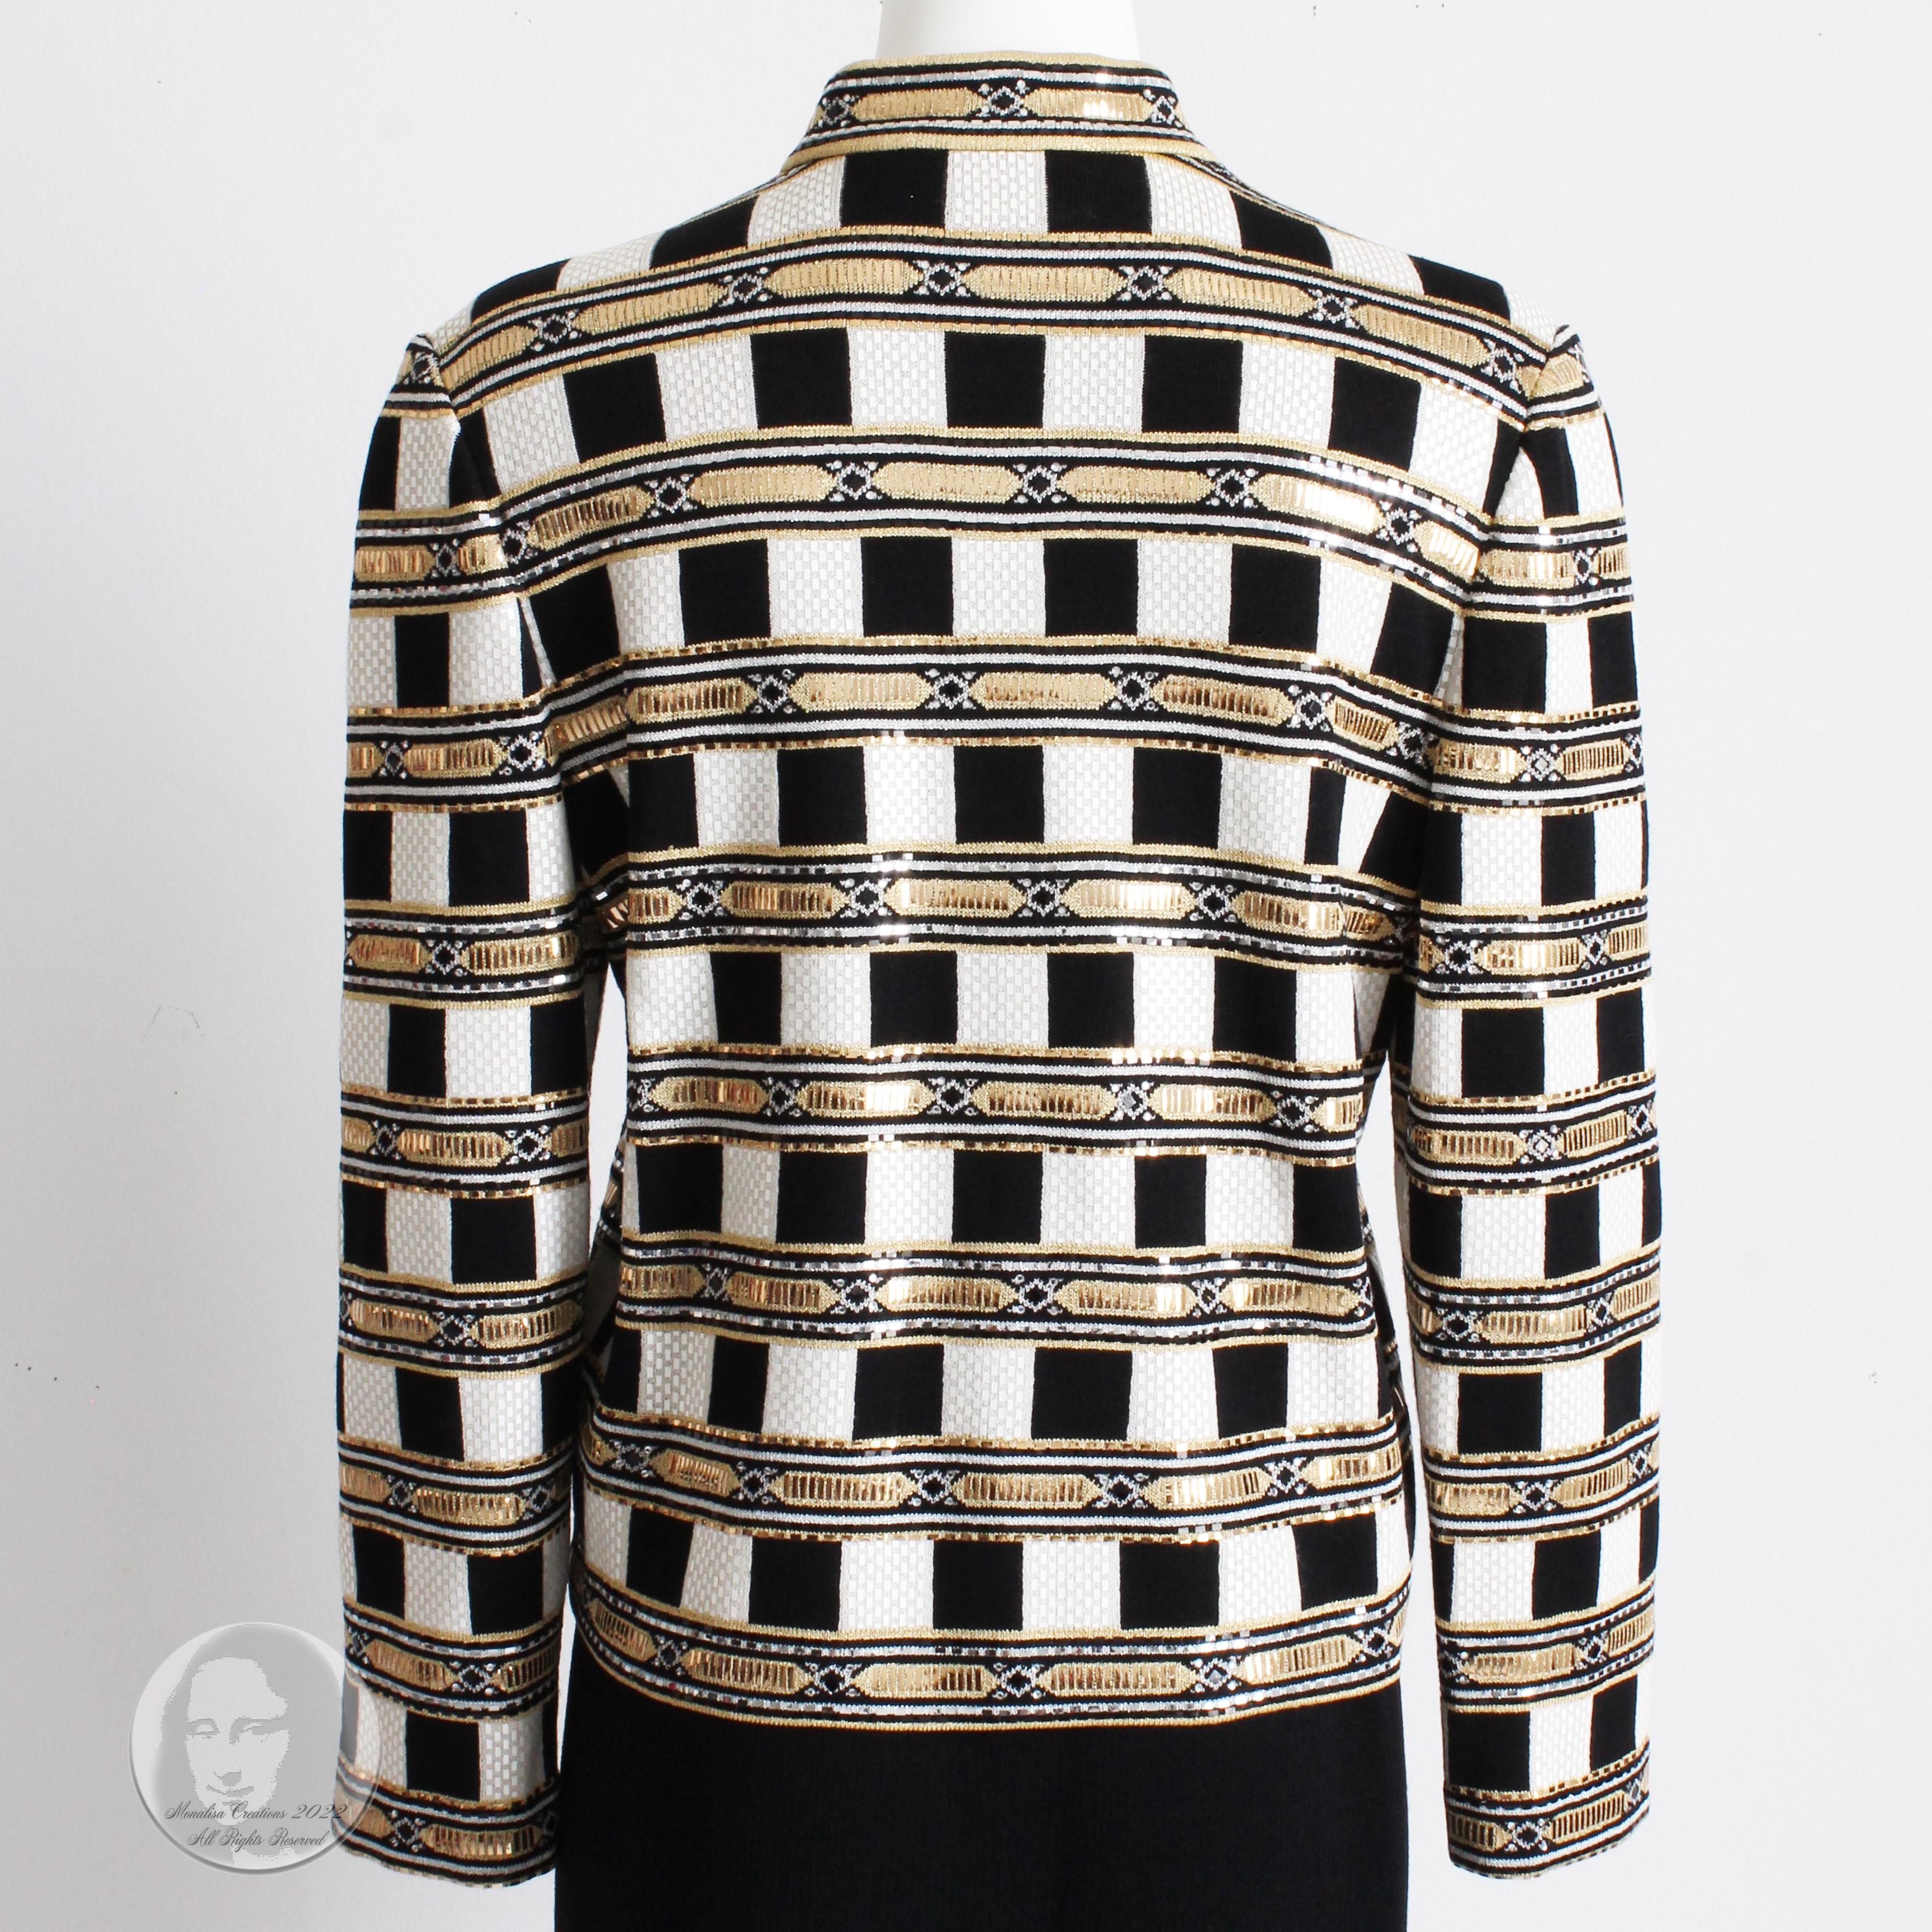 St John Evening Jacket Embellished Knit Gold Black White Zip Front Vintage Sz 10 For Sale 2